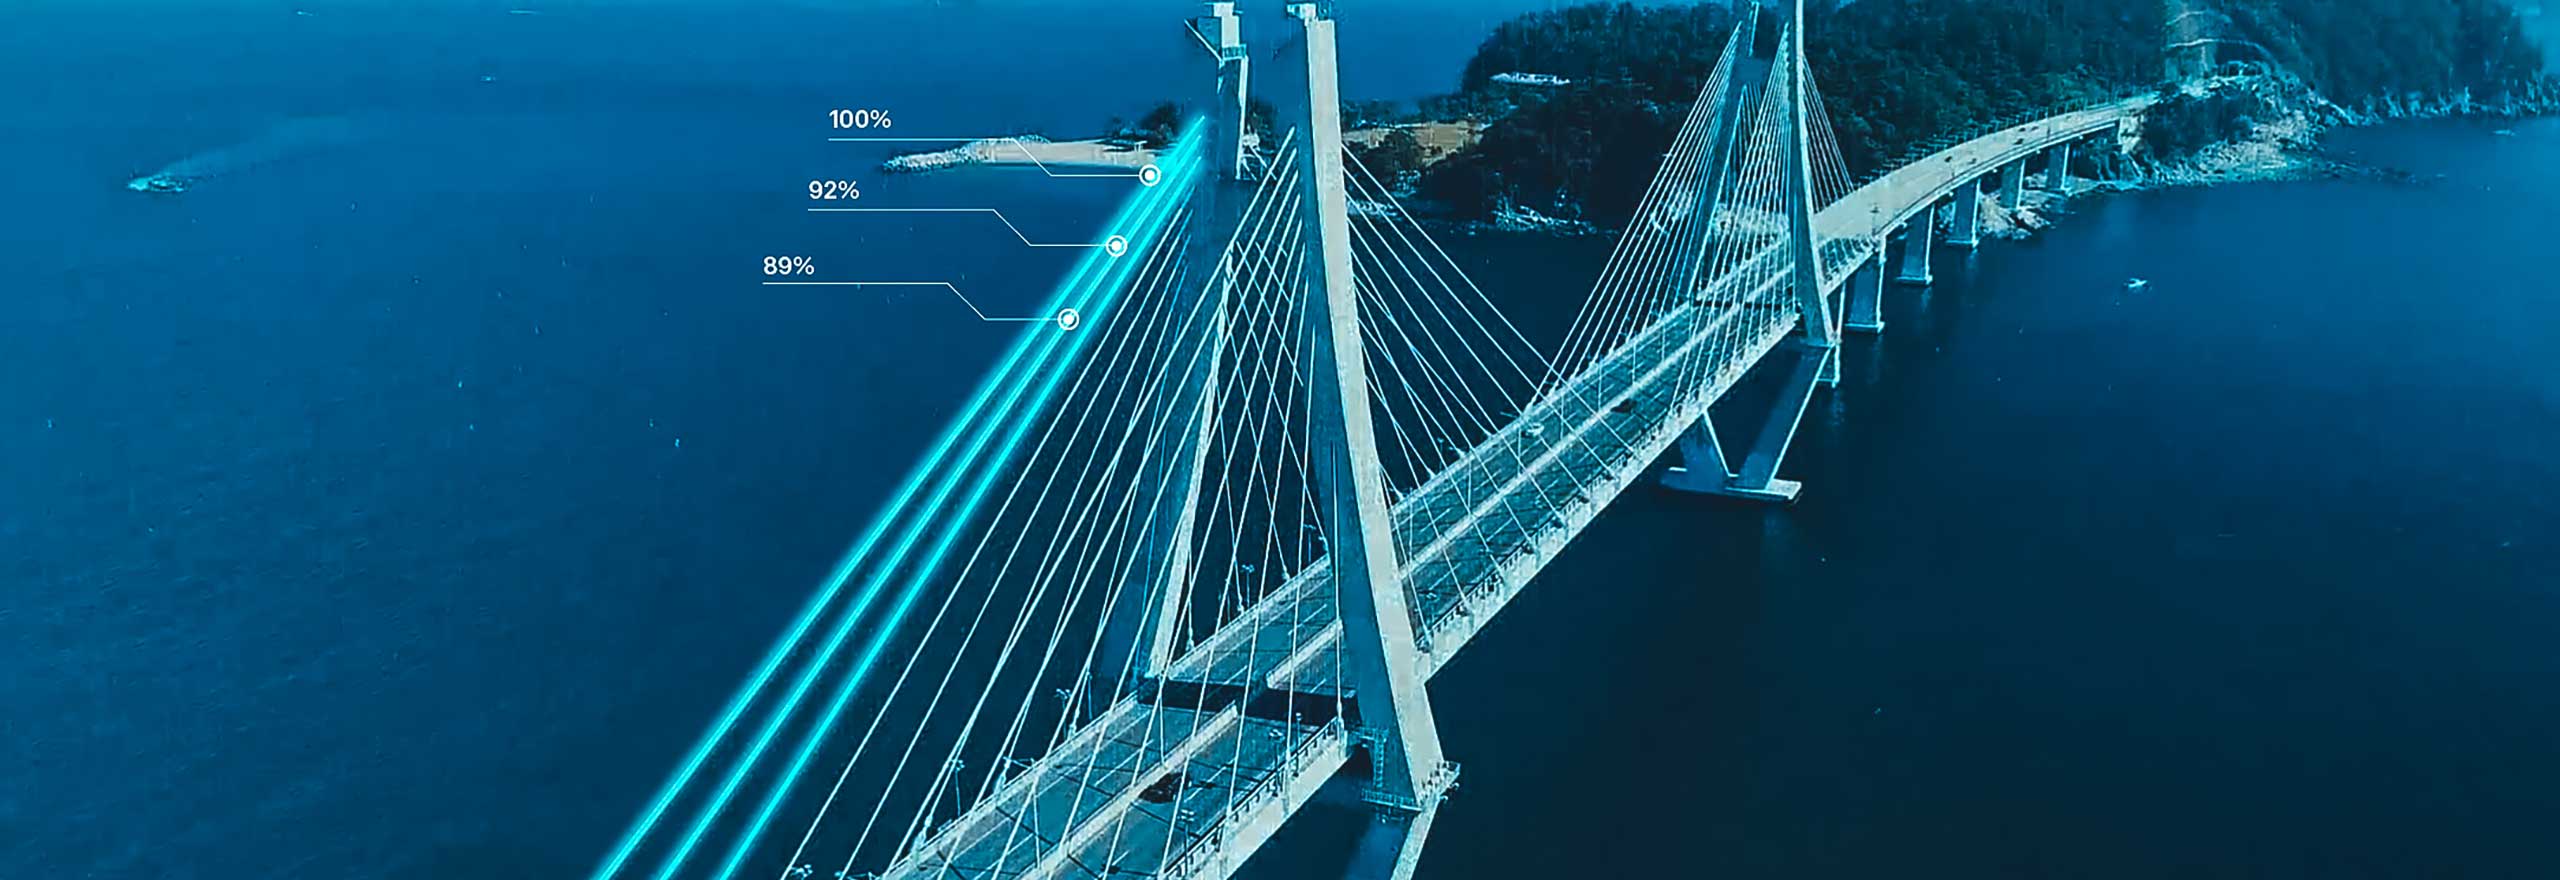 imagen de un puente